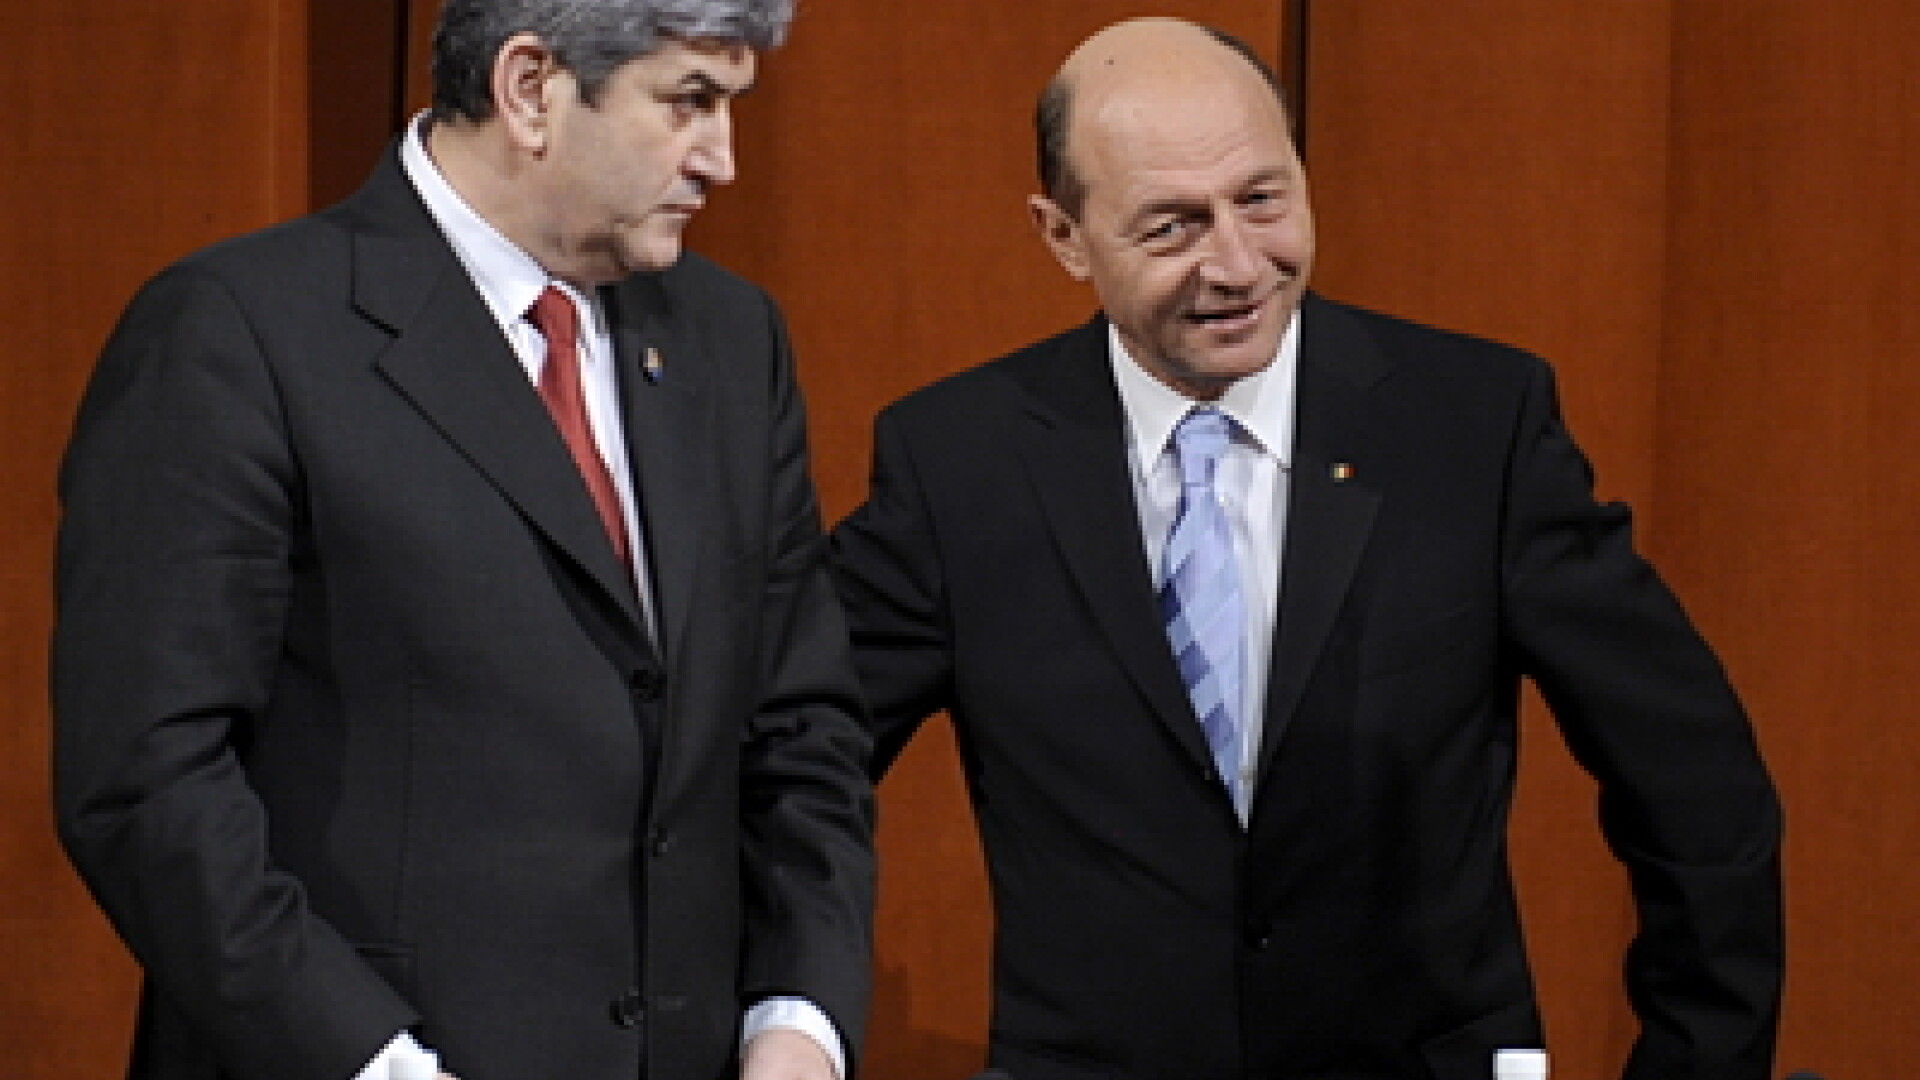 Gabriel Oprea si Traian Basescu